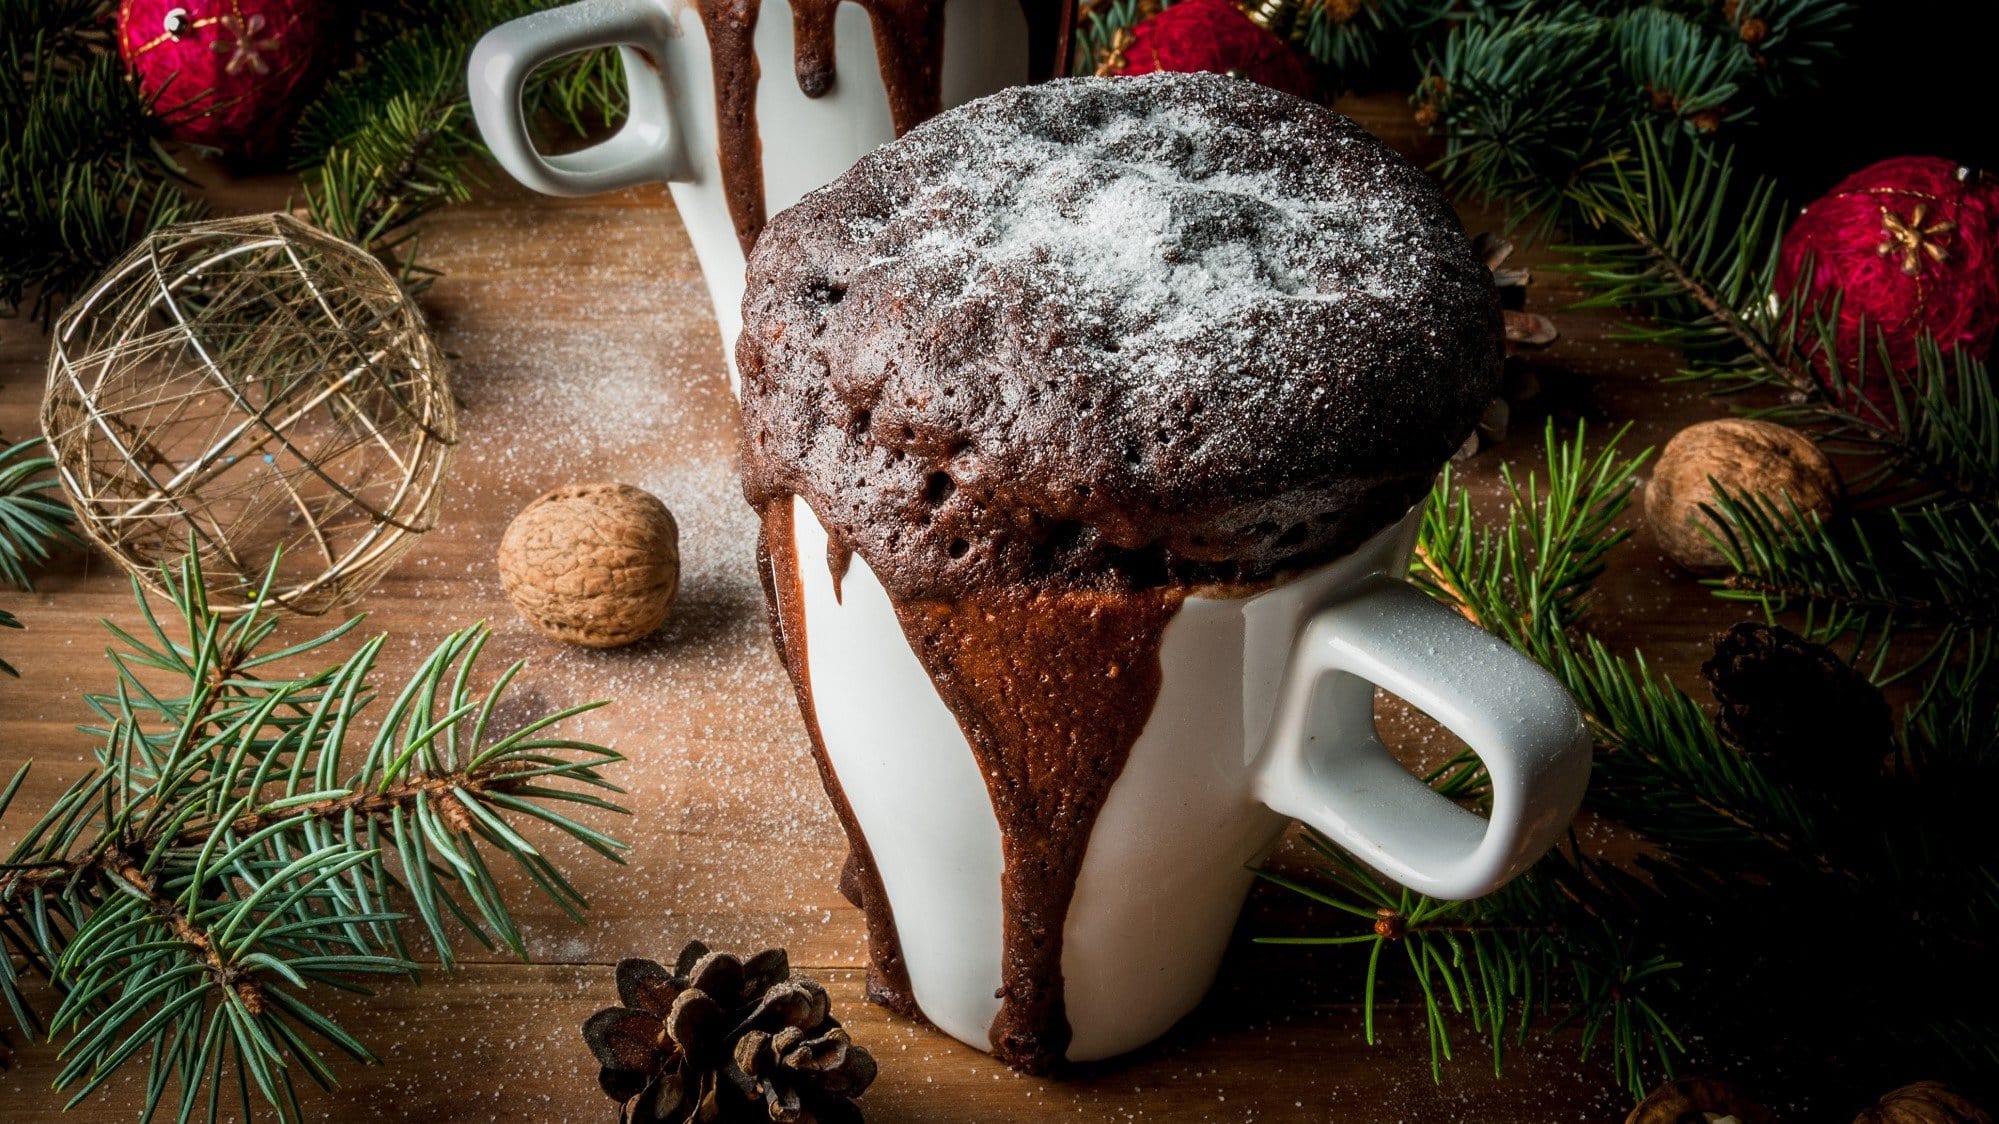 In einer weißen Tasse ist ein schokoladiger Tassenkuchen aufgebacken. Er ist mit Puderzucker bestreut. Die Tasse steht auf einem Holztisch, welcher weihnachtlich dekoriert ist.